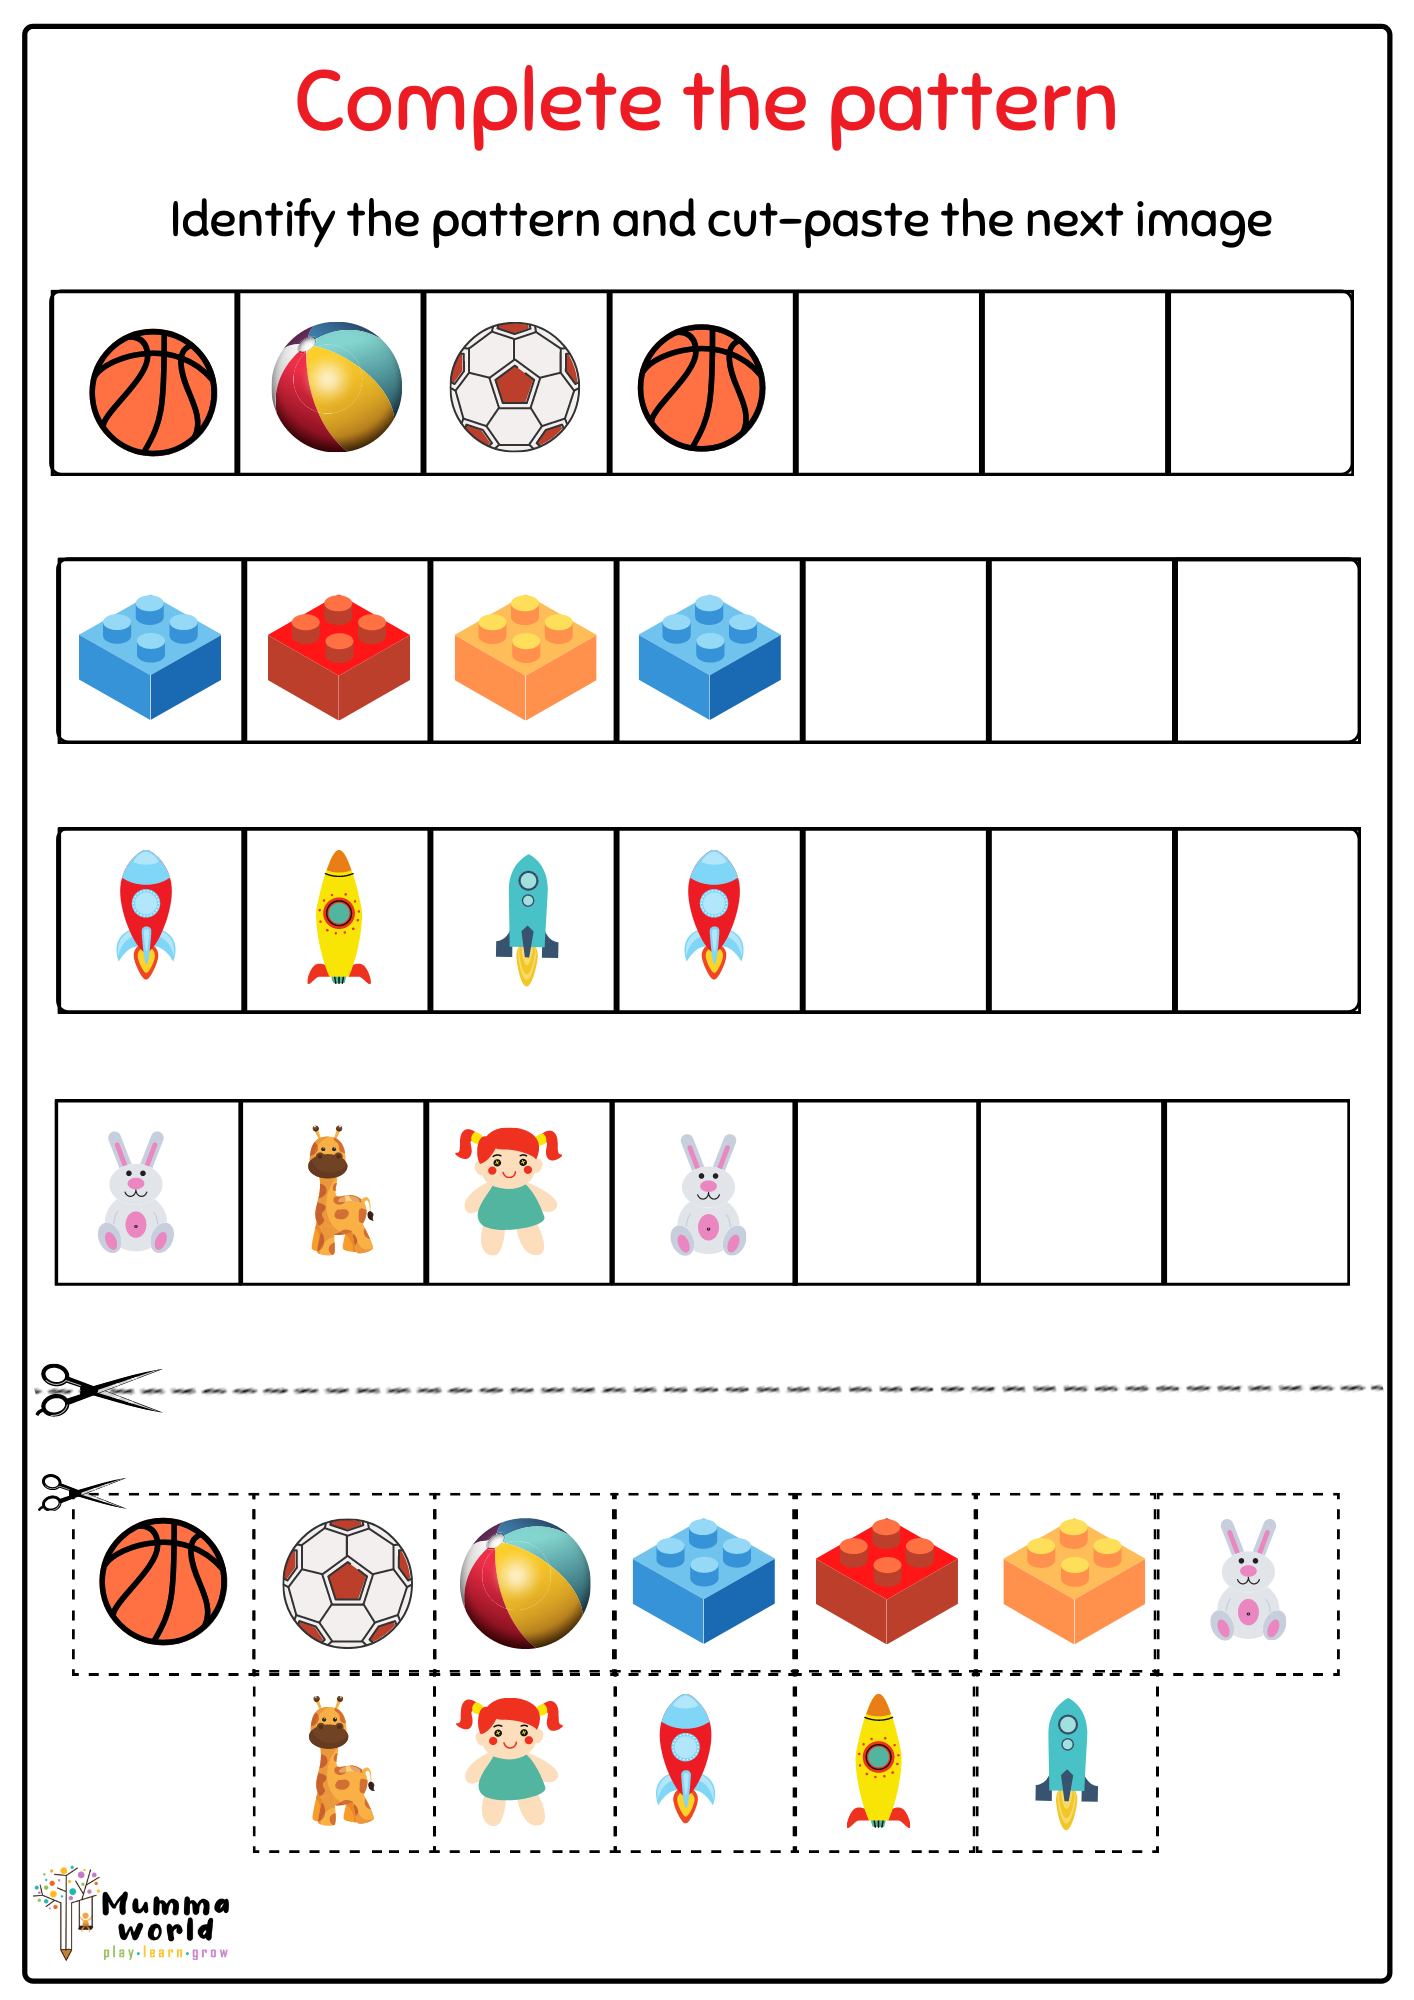 Kindergarten Worksheets And Printables